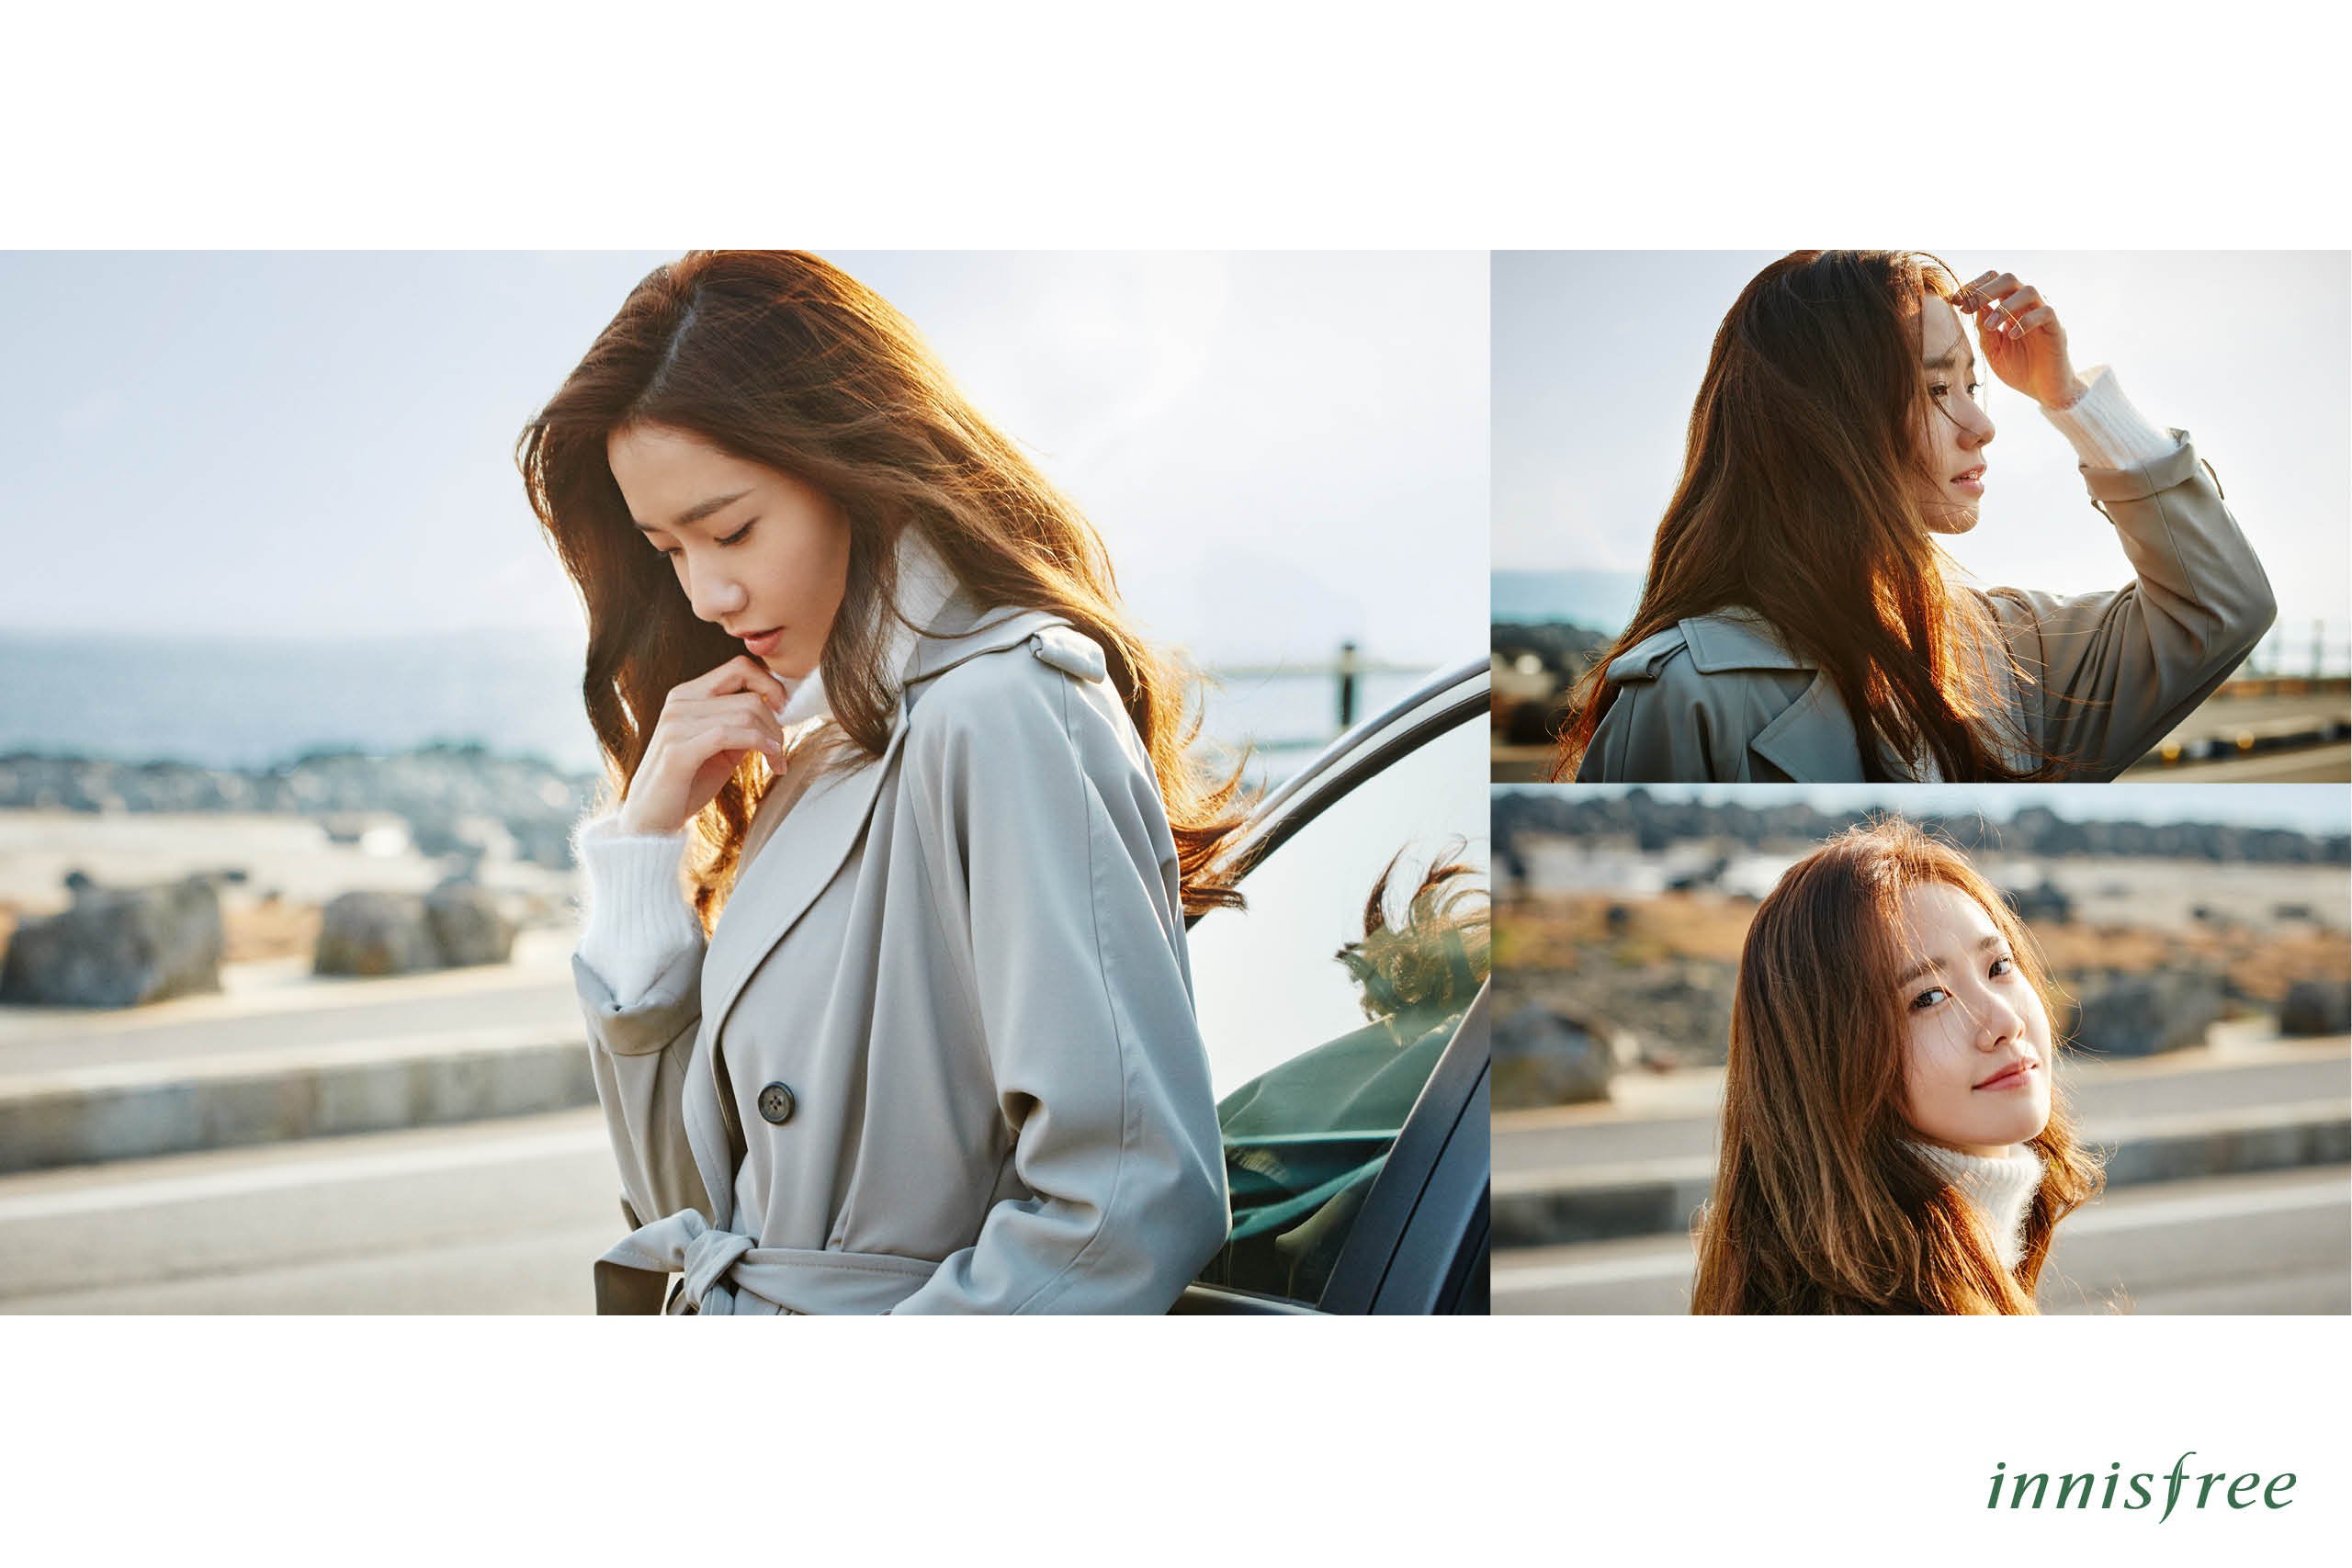 [OTHER][21-07-2012]Hình ảnh mới nhất từ thương hiệu "Innisfree" của YoonA - Page 14 LxeFlJs1eD-3000x3000